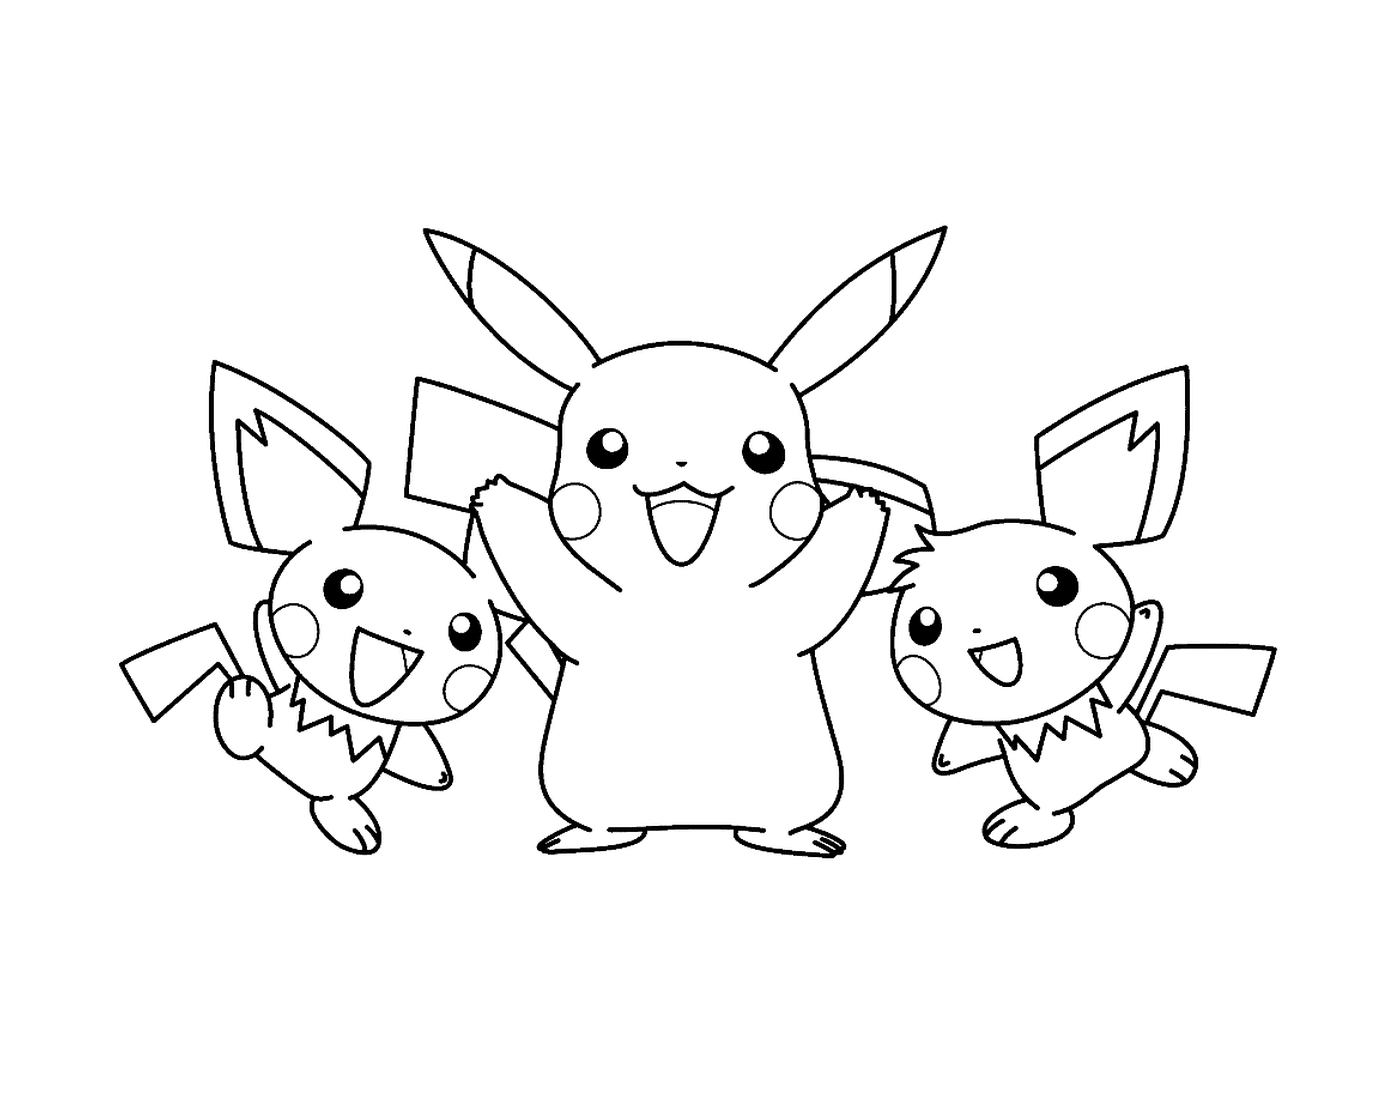   Trois Pikachus pour les enfants 